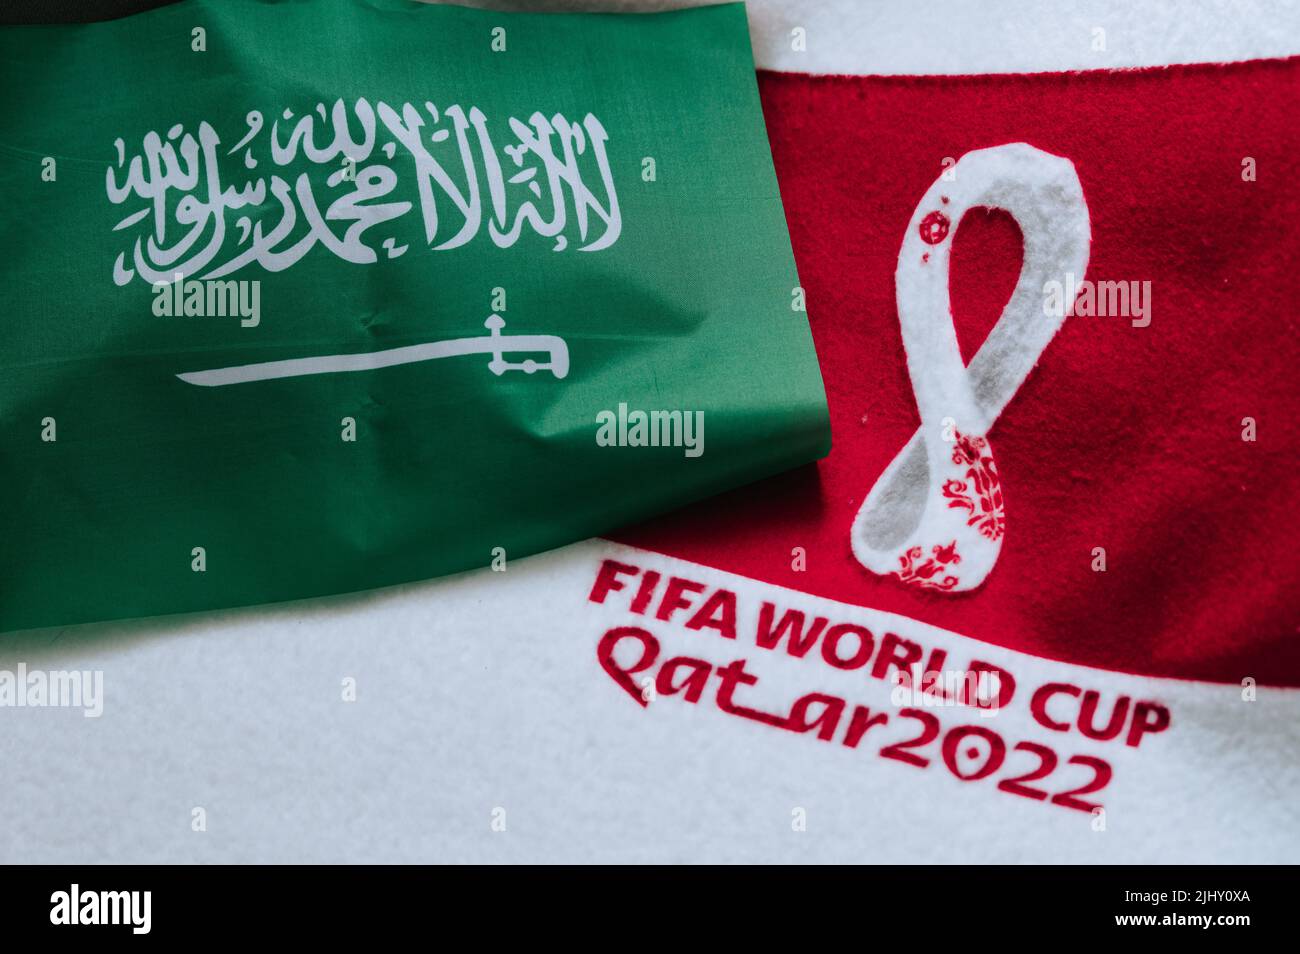 QATAR, DOHA, 18 LUGLIO 2022: Bandiera nazionale dell'Arabia Saudita e logo della Coppa del mondo FIFA in Qatar 2022 su tappeto rosso. Sfondo dello sport di calcio, spazio di modifica. QA Foto Stock